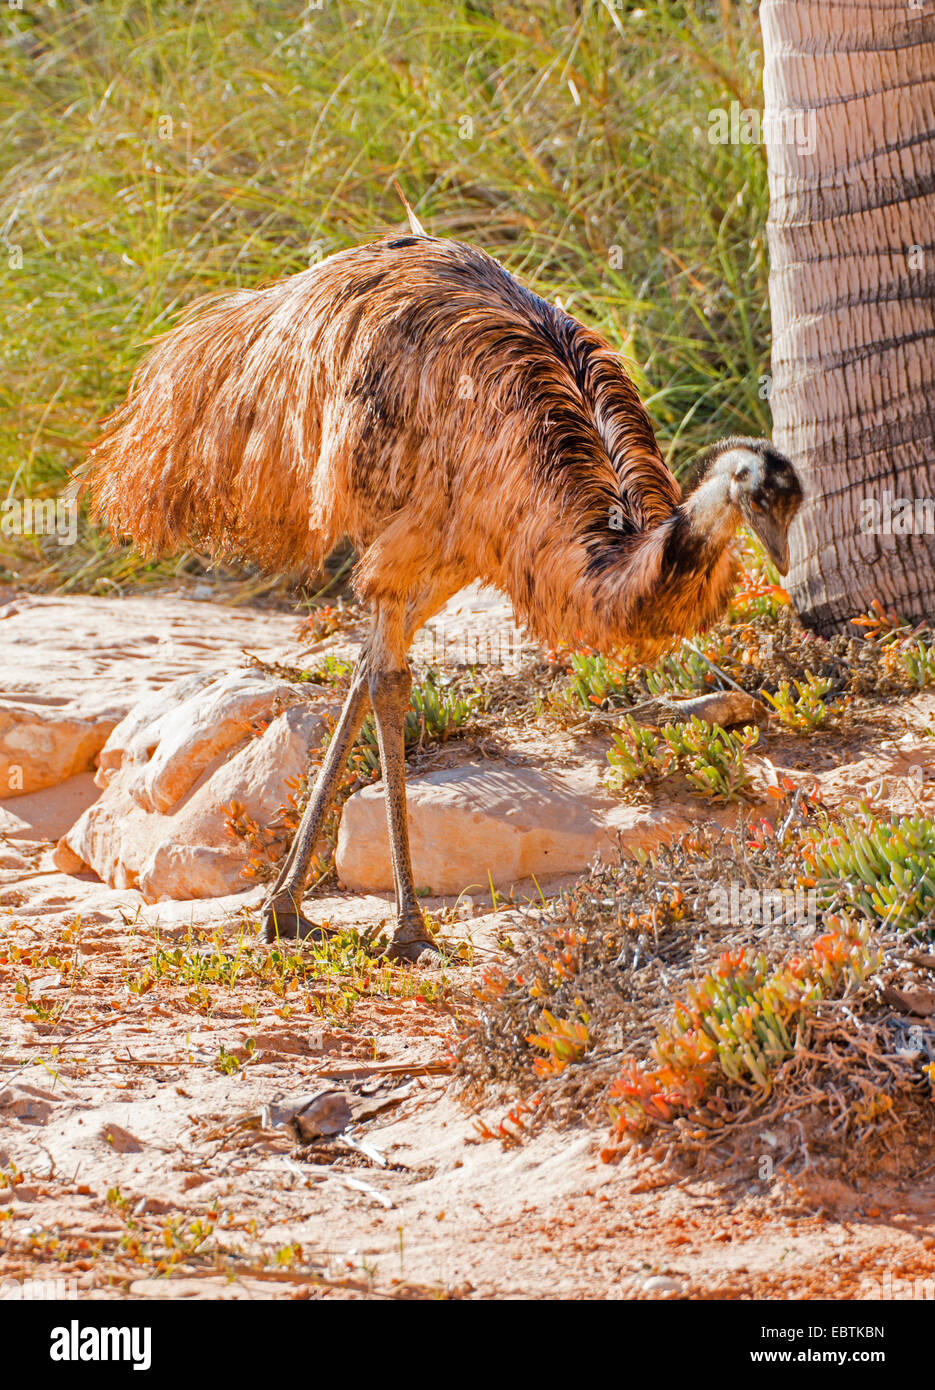 emu (Dromaius novaehollandiae), on the beach, Australia, Western Australia, Monkey Mia Stock Photo